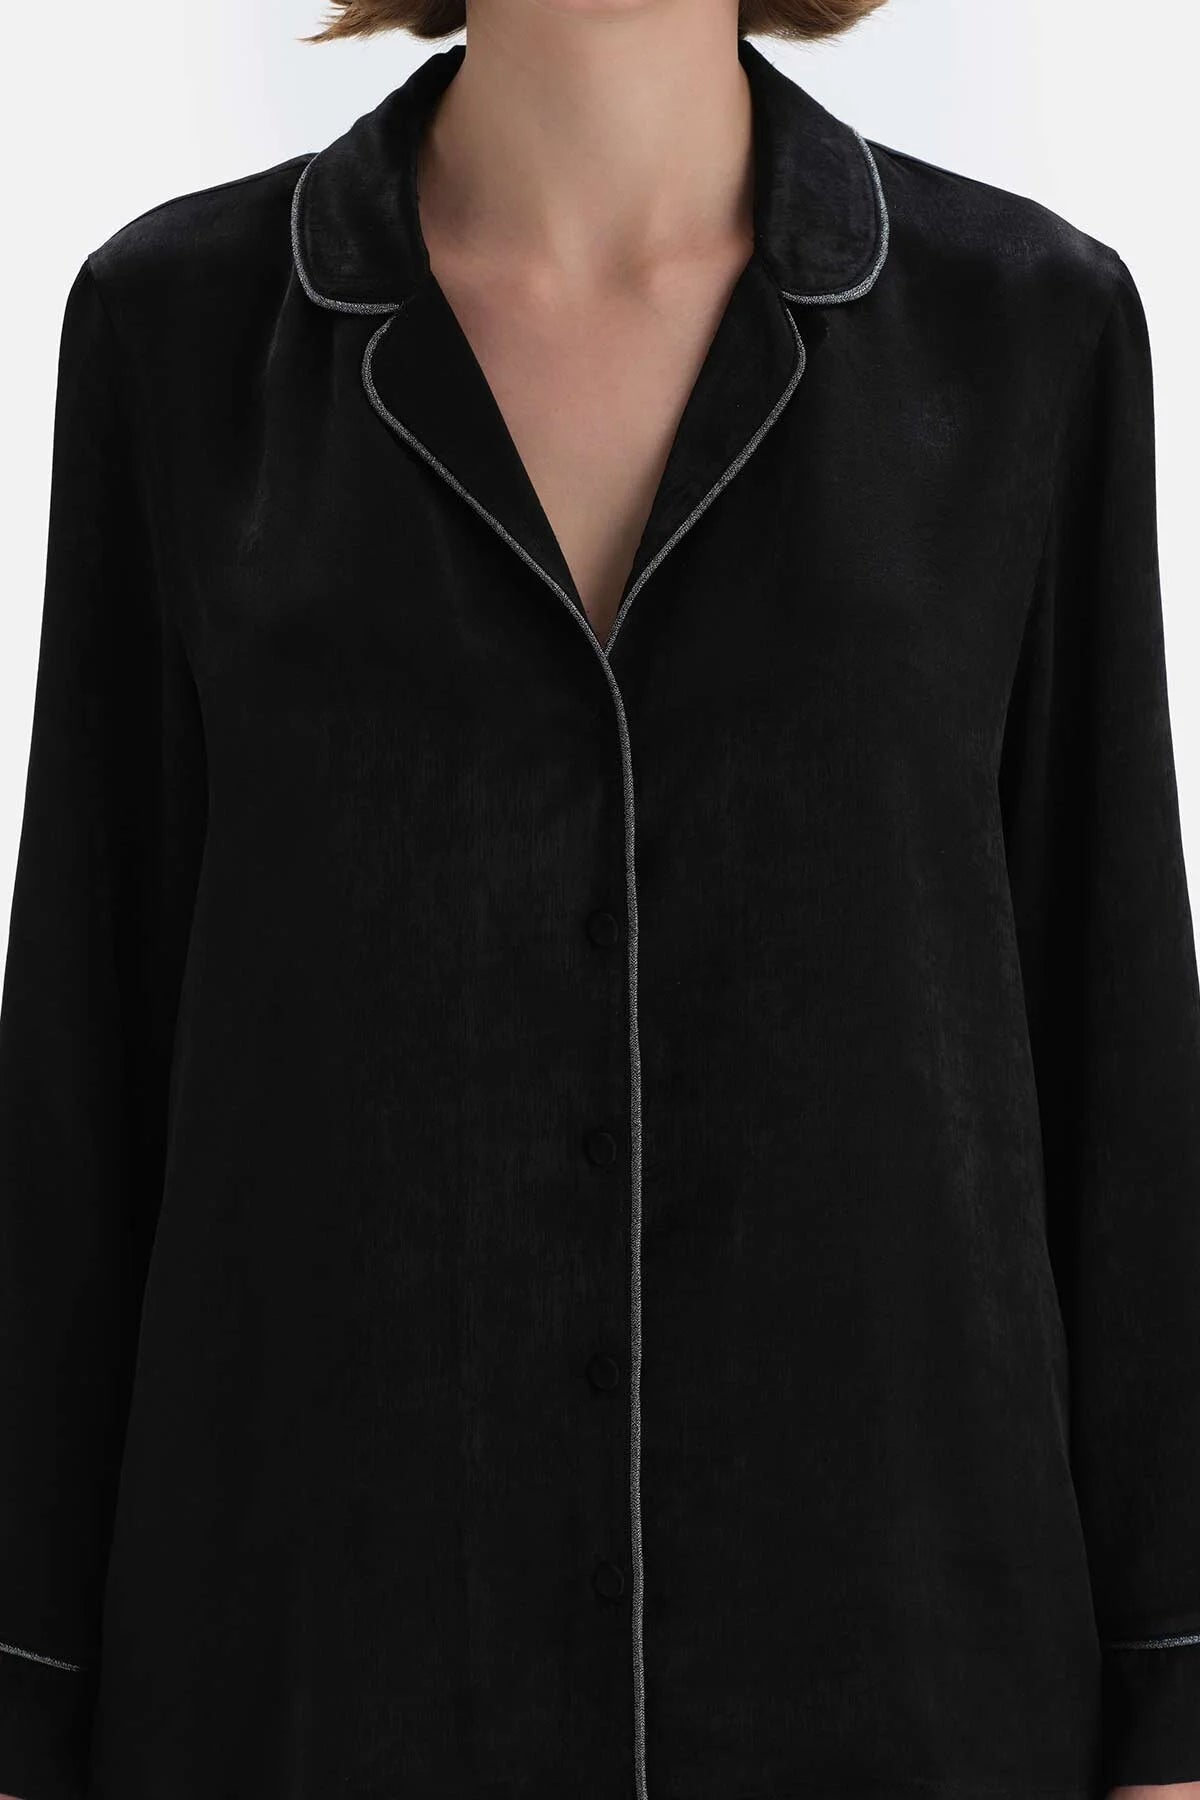 Women Black Shirt Collar Stripe Detailed Satin Pajama Set